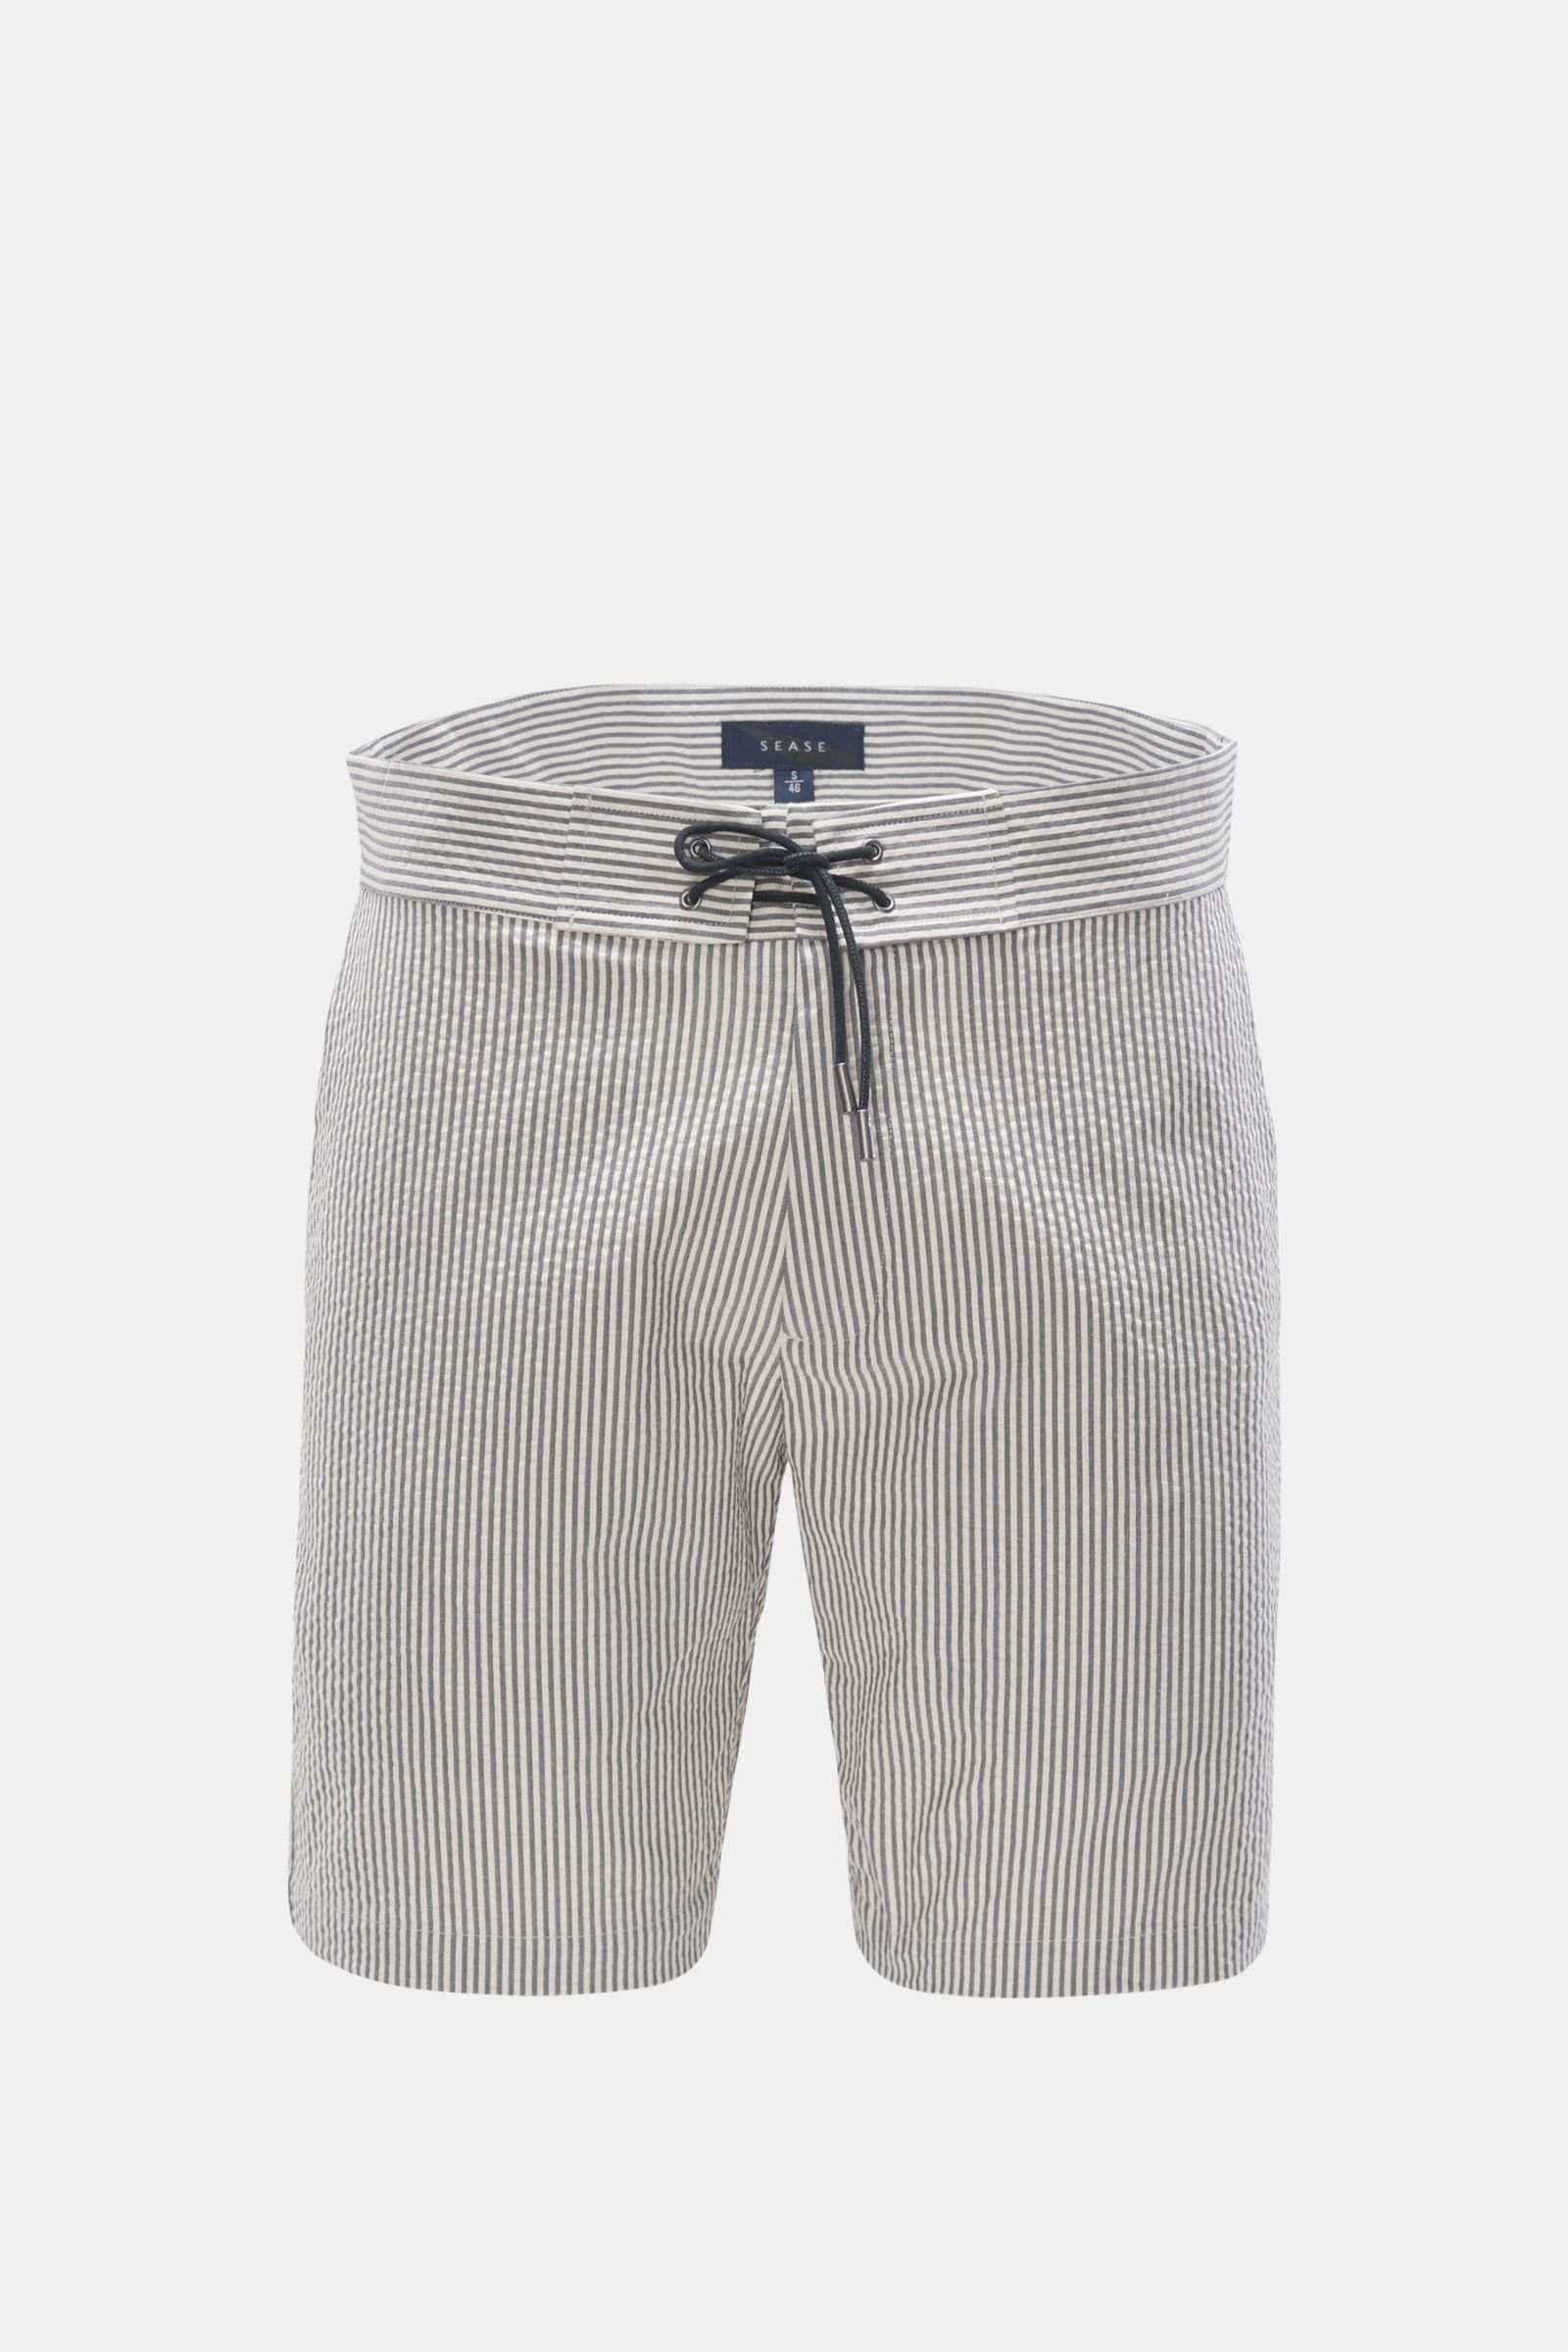 Seersucker Bermuda shorts 'Sunset Short' dark grey/off-white striped